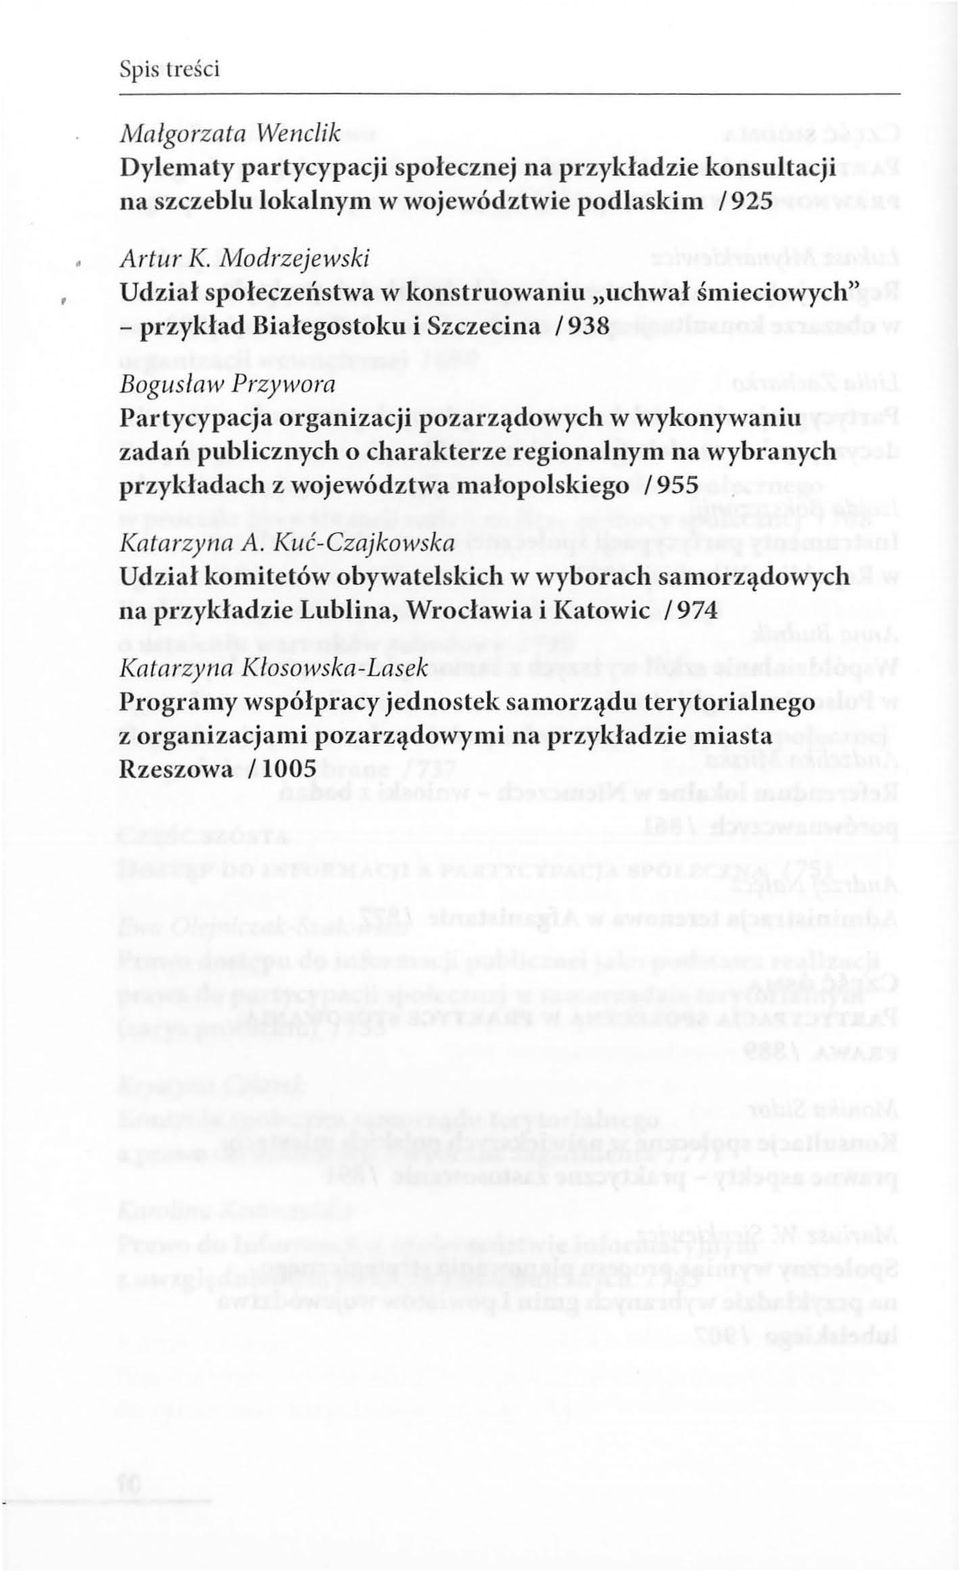 wykonywaniu zadań publicznych o charakterze regionalnym na wybranych przykładach z województwa małopolskiego /955 Katarzyna A.